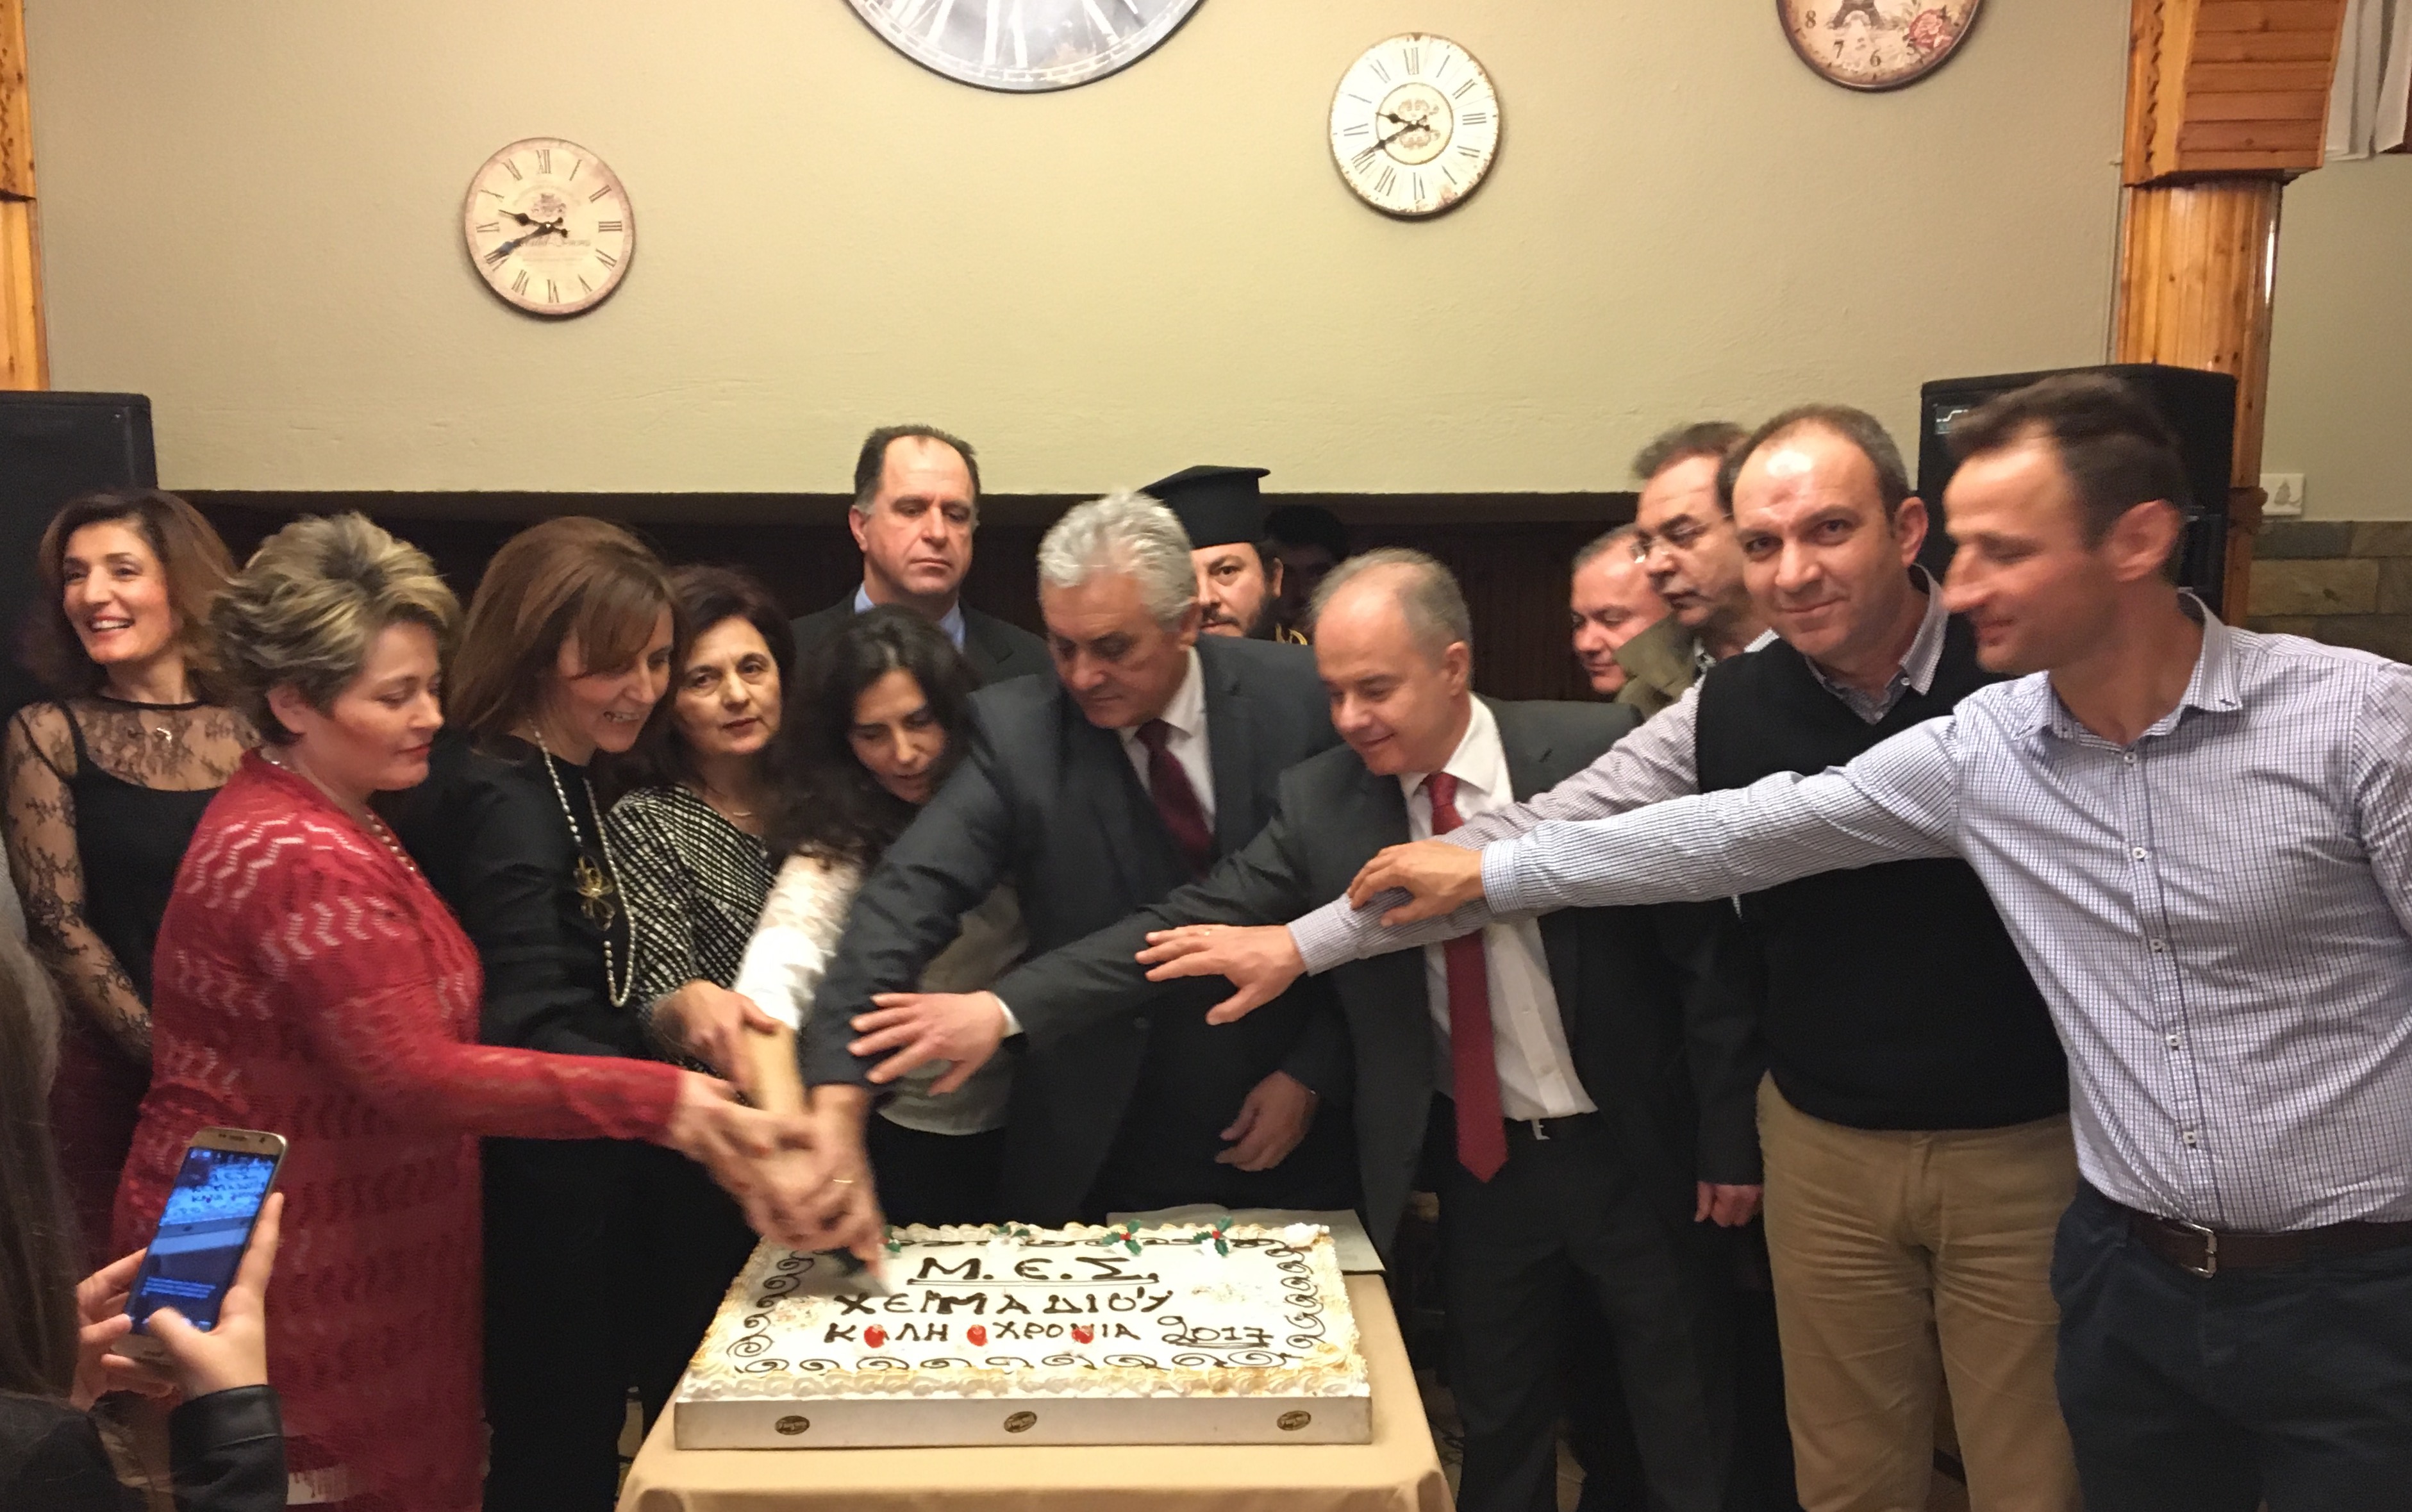 Παρουσία του Δημάρχου Τεμπών έκοψε την πρωτοχρονιάτικη πίτα του  ο Μορφωτικός σύλλογος Χειμαδίου